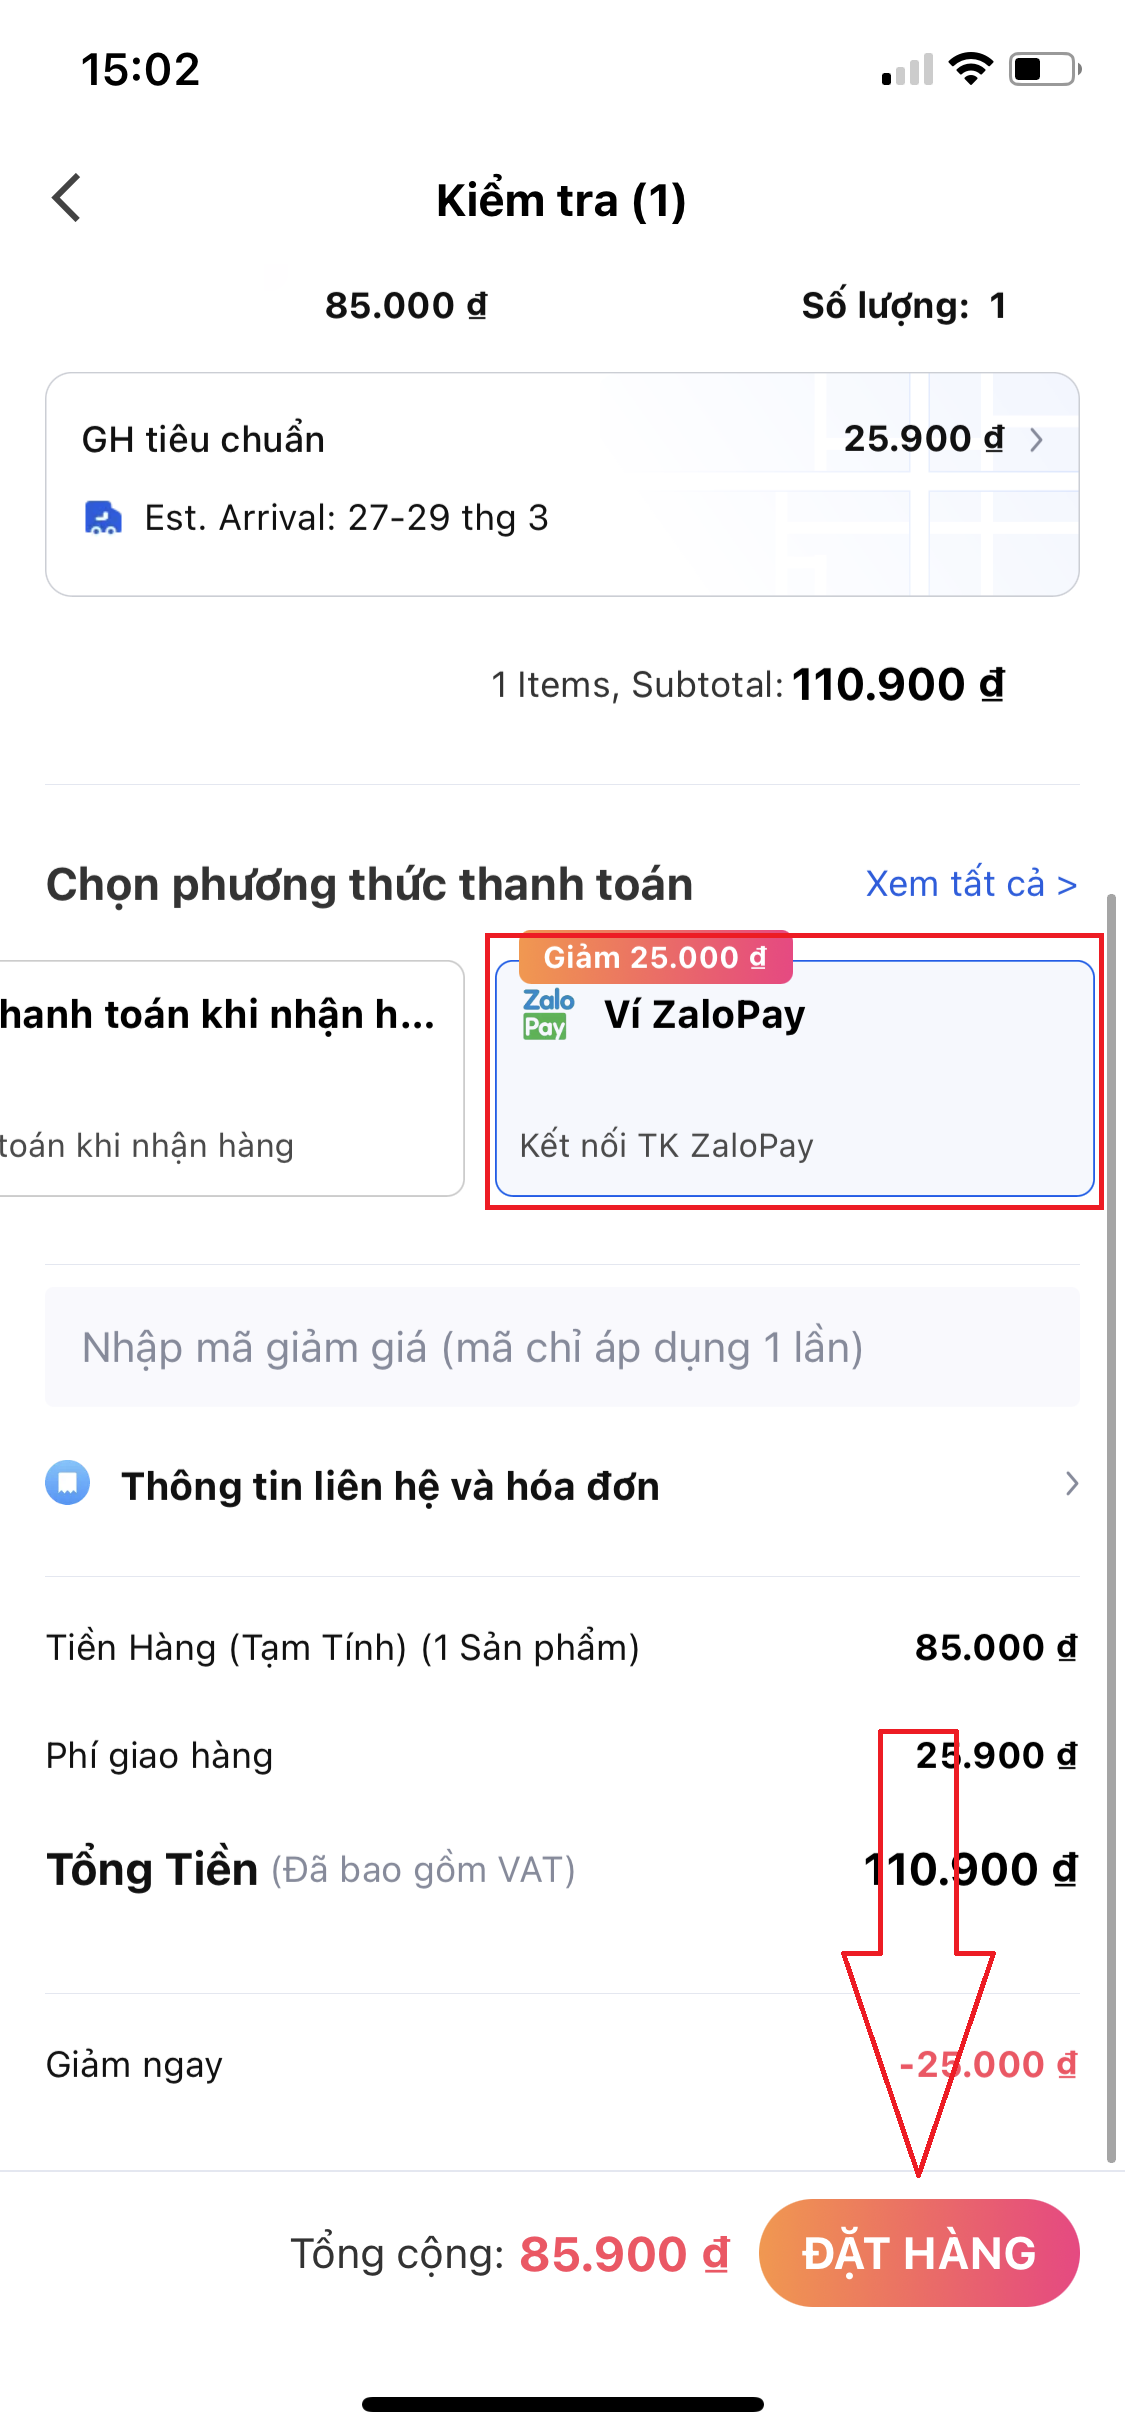 Chọn thanh toán bằng ví ZaloPay và nhấn đặt hàng